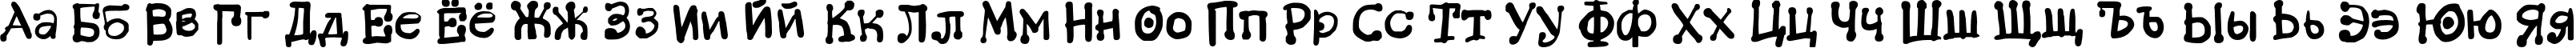 Пример написания русского алфавита шрифтом BistroC